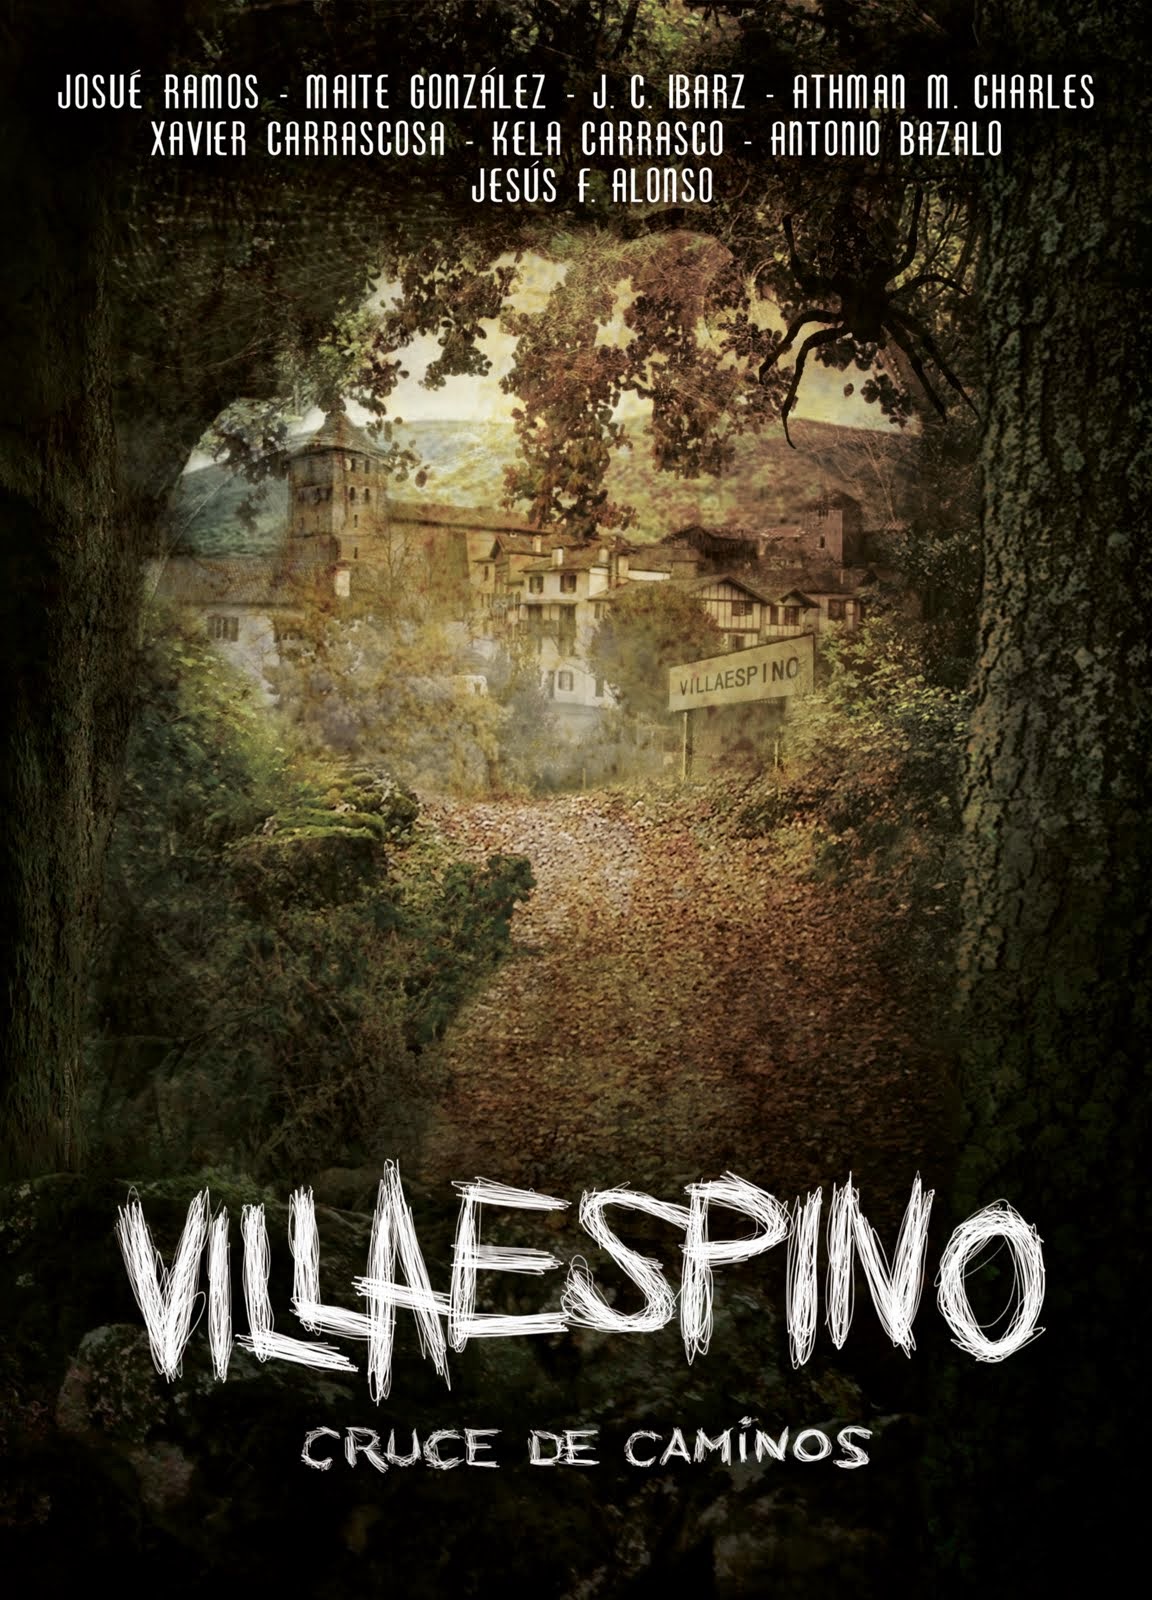 Villaespino:Cruce de Caminos, novela de terror con fines benéficos escrita entre varios autores